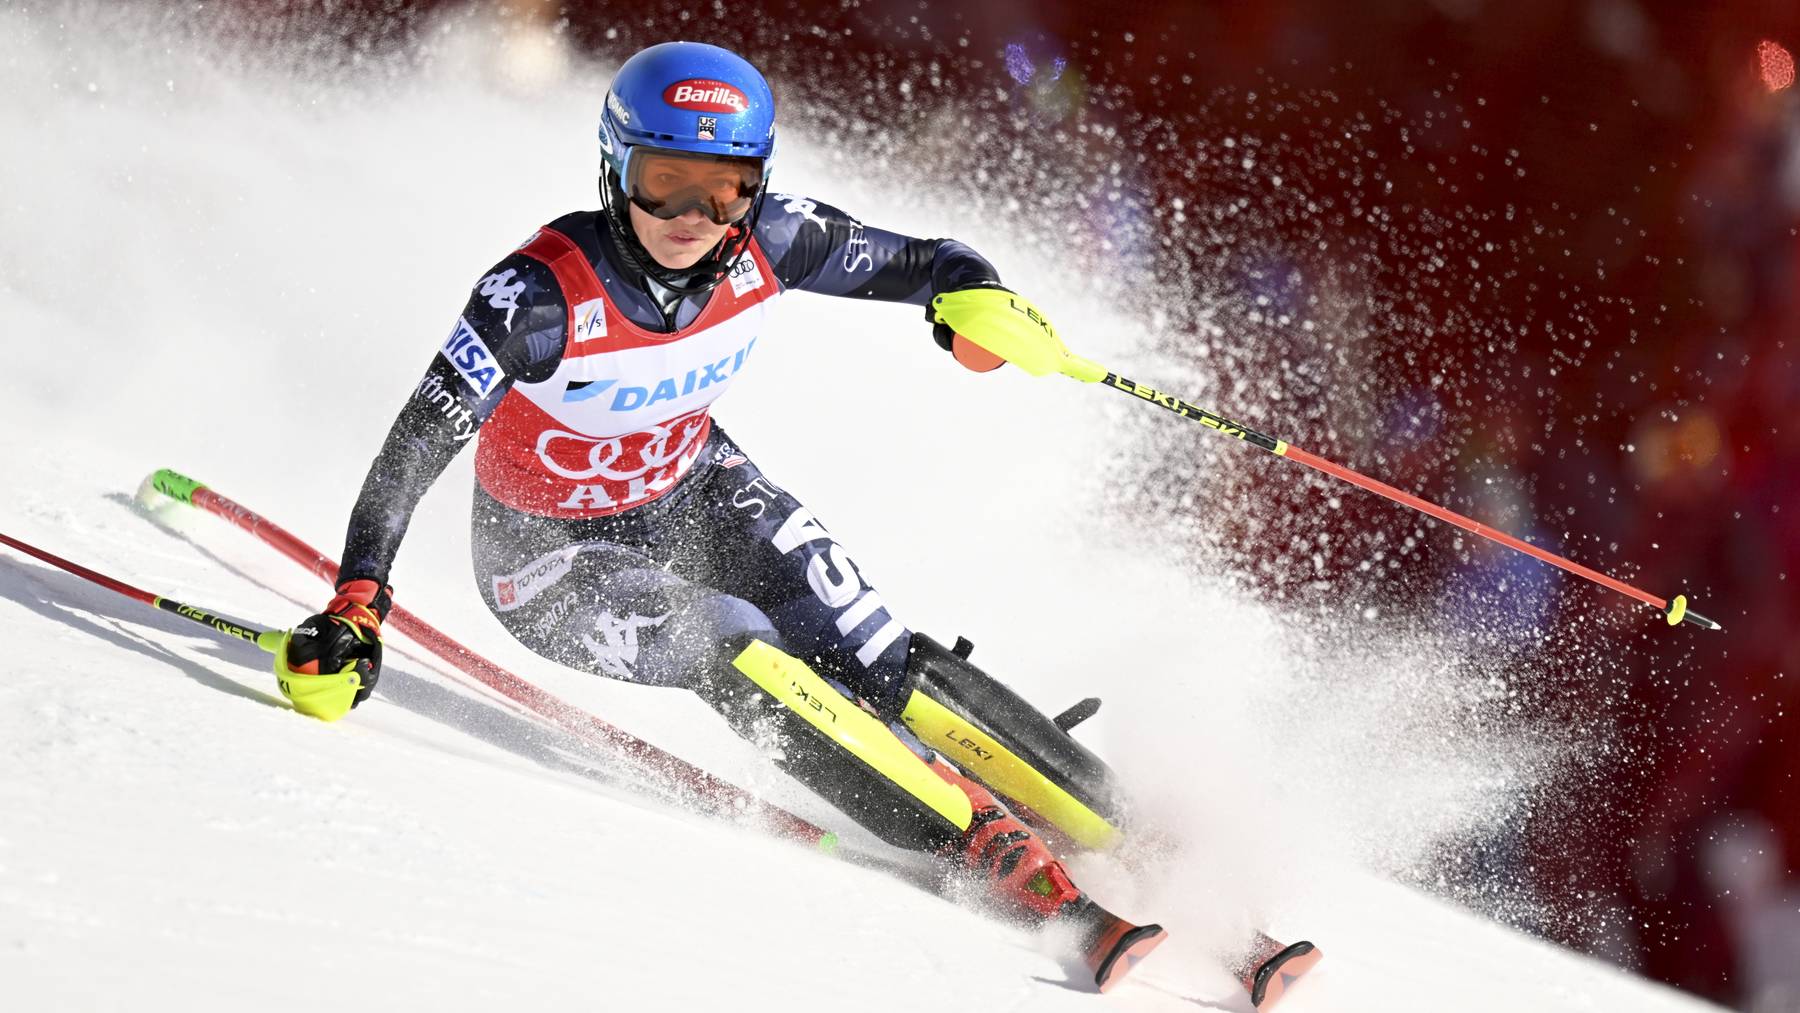 Mikaela Shiffrin sichert sich mit dem Slalom-Triumph in Are ihren 87. Weltcupsieg und ist damit alleinige Rekordhalterin.